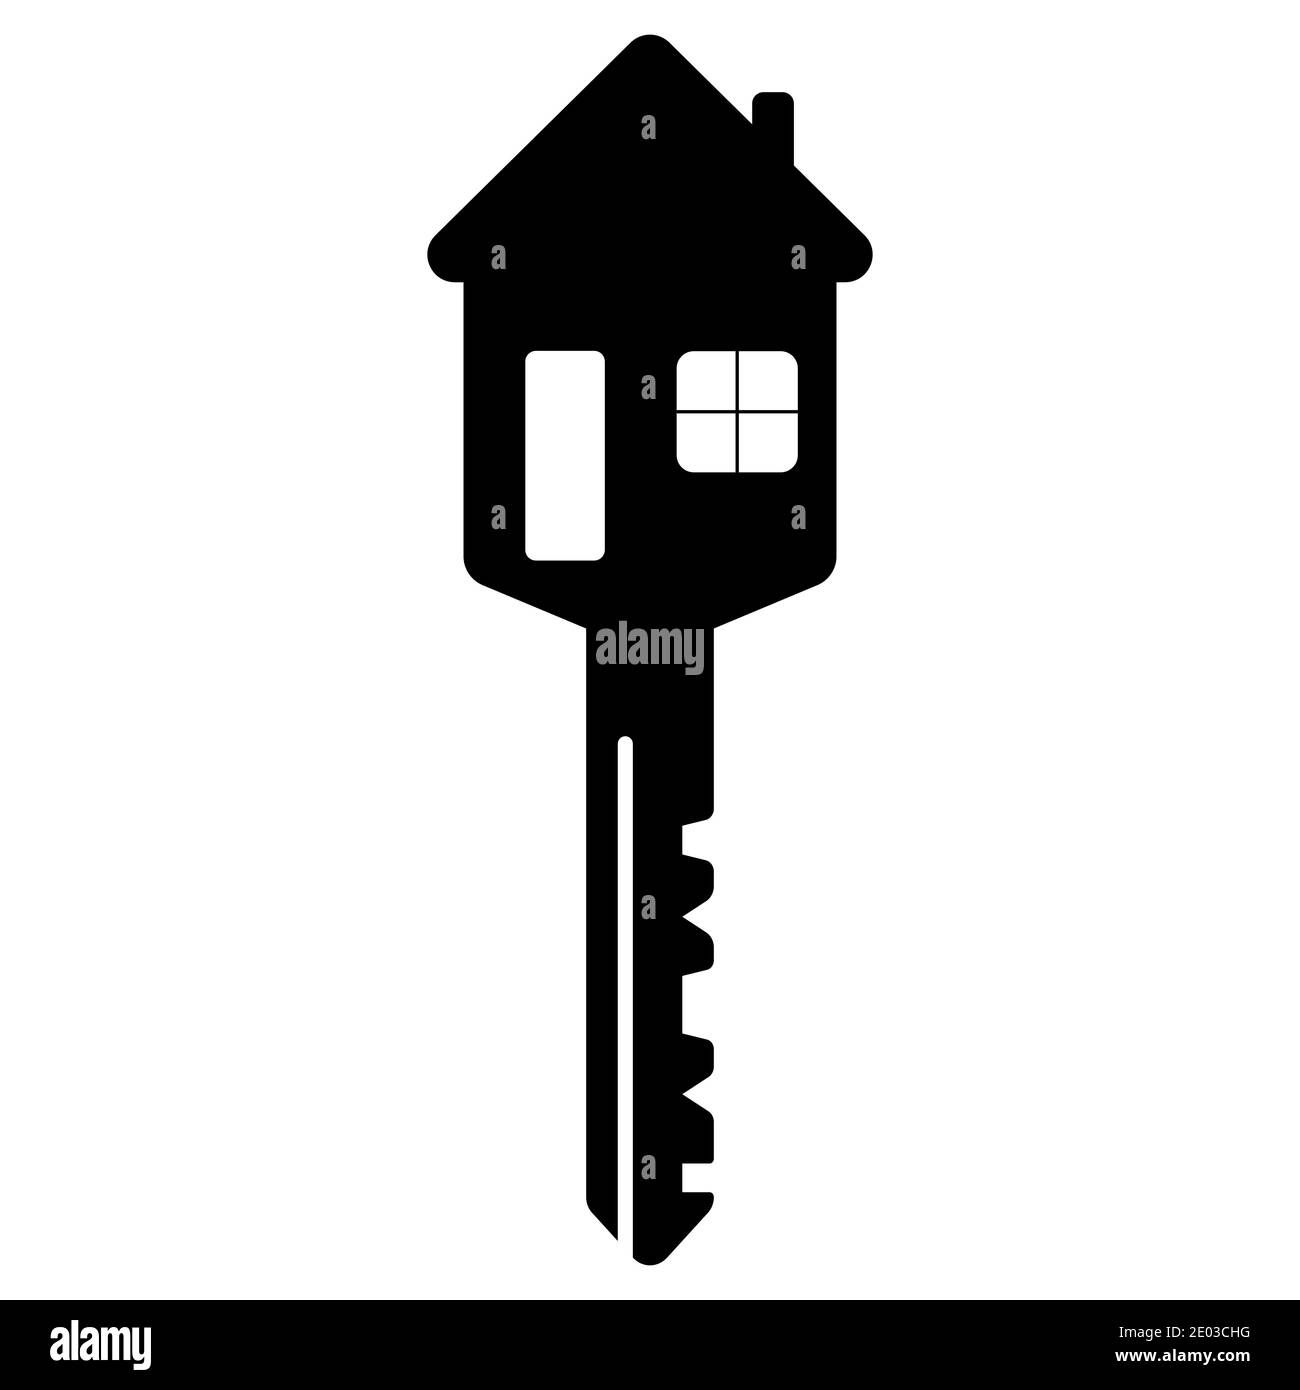 clé de maison en forme de maison avec fenêtre et porte vecteur clé à la maison d'une vie de famille heureuse Illustration de Vecteur